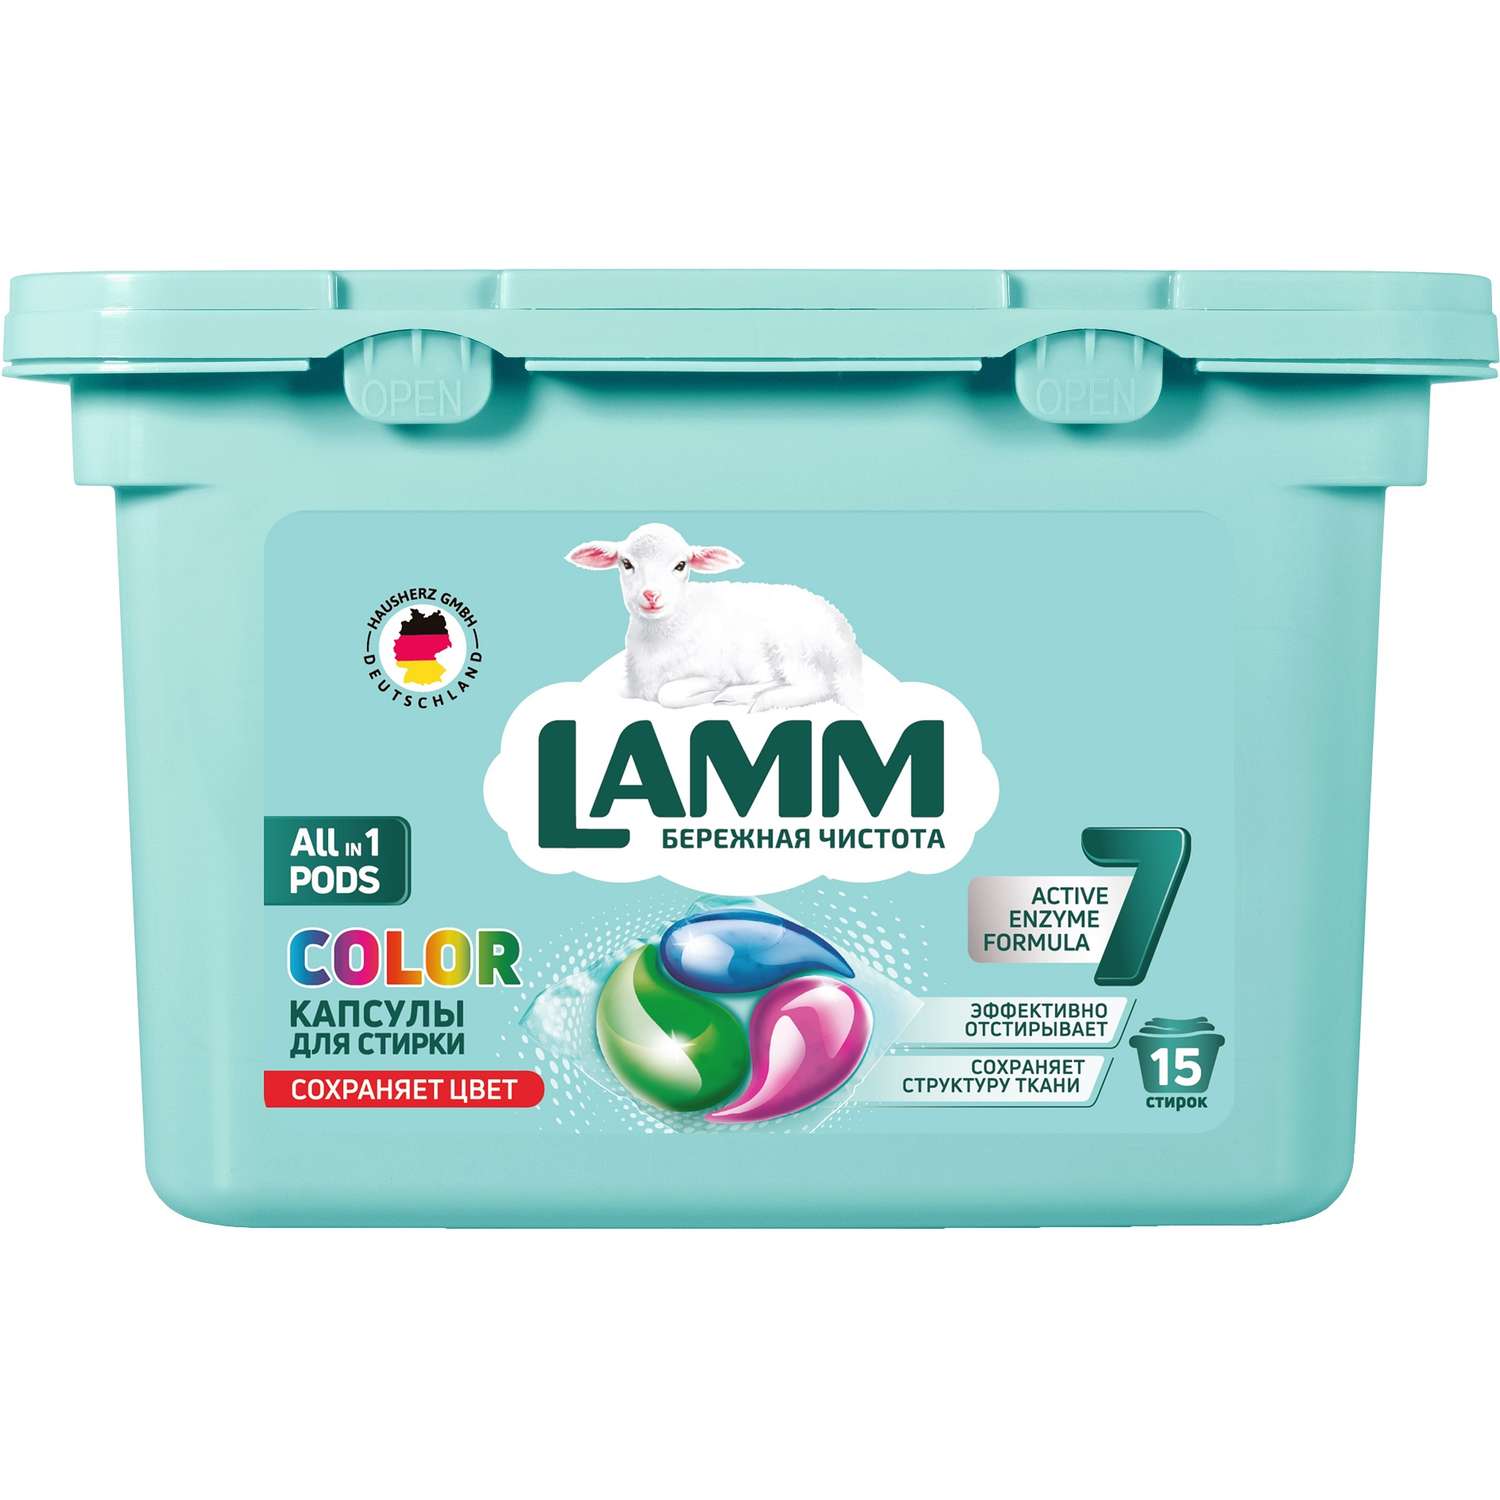 Капсулы для стирки LAMM Color 15шт. - фото 15